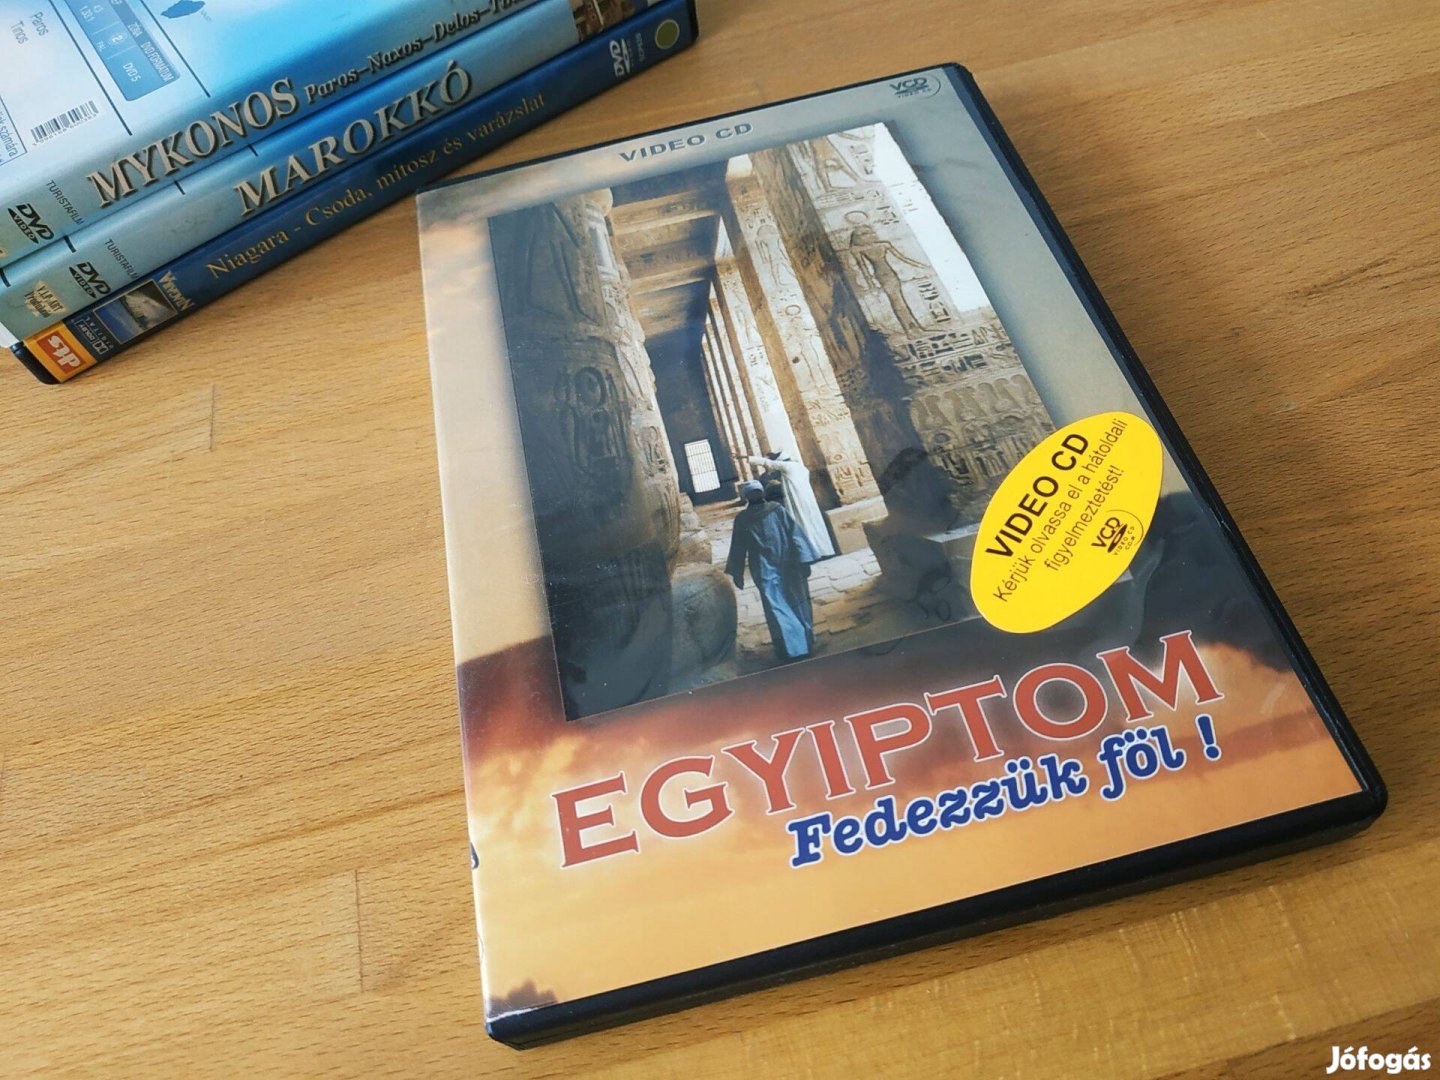 Egyiptom - Fedezzük föl! (VCD)